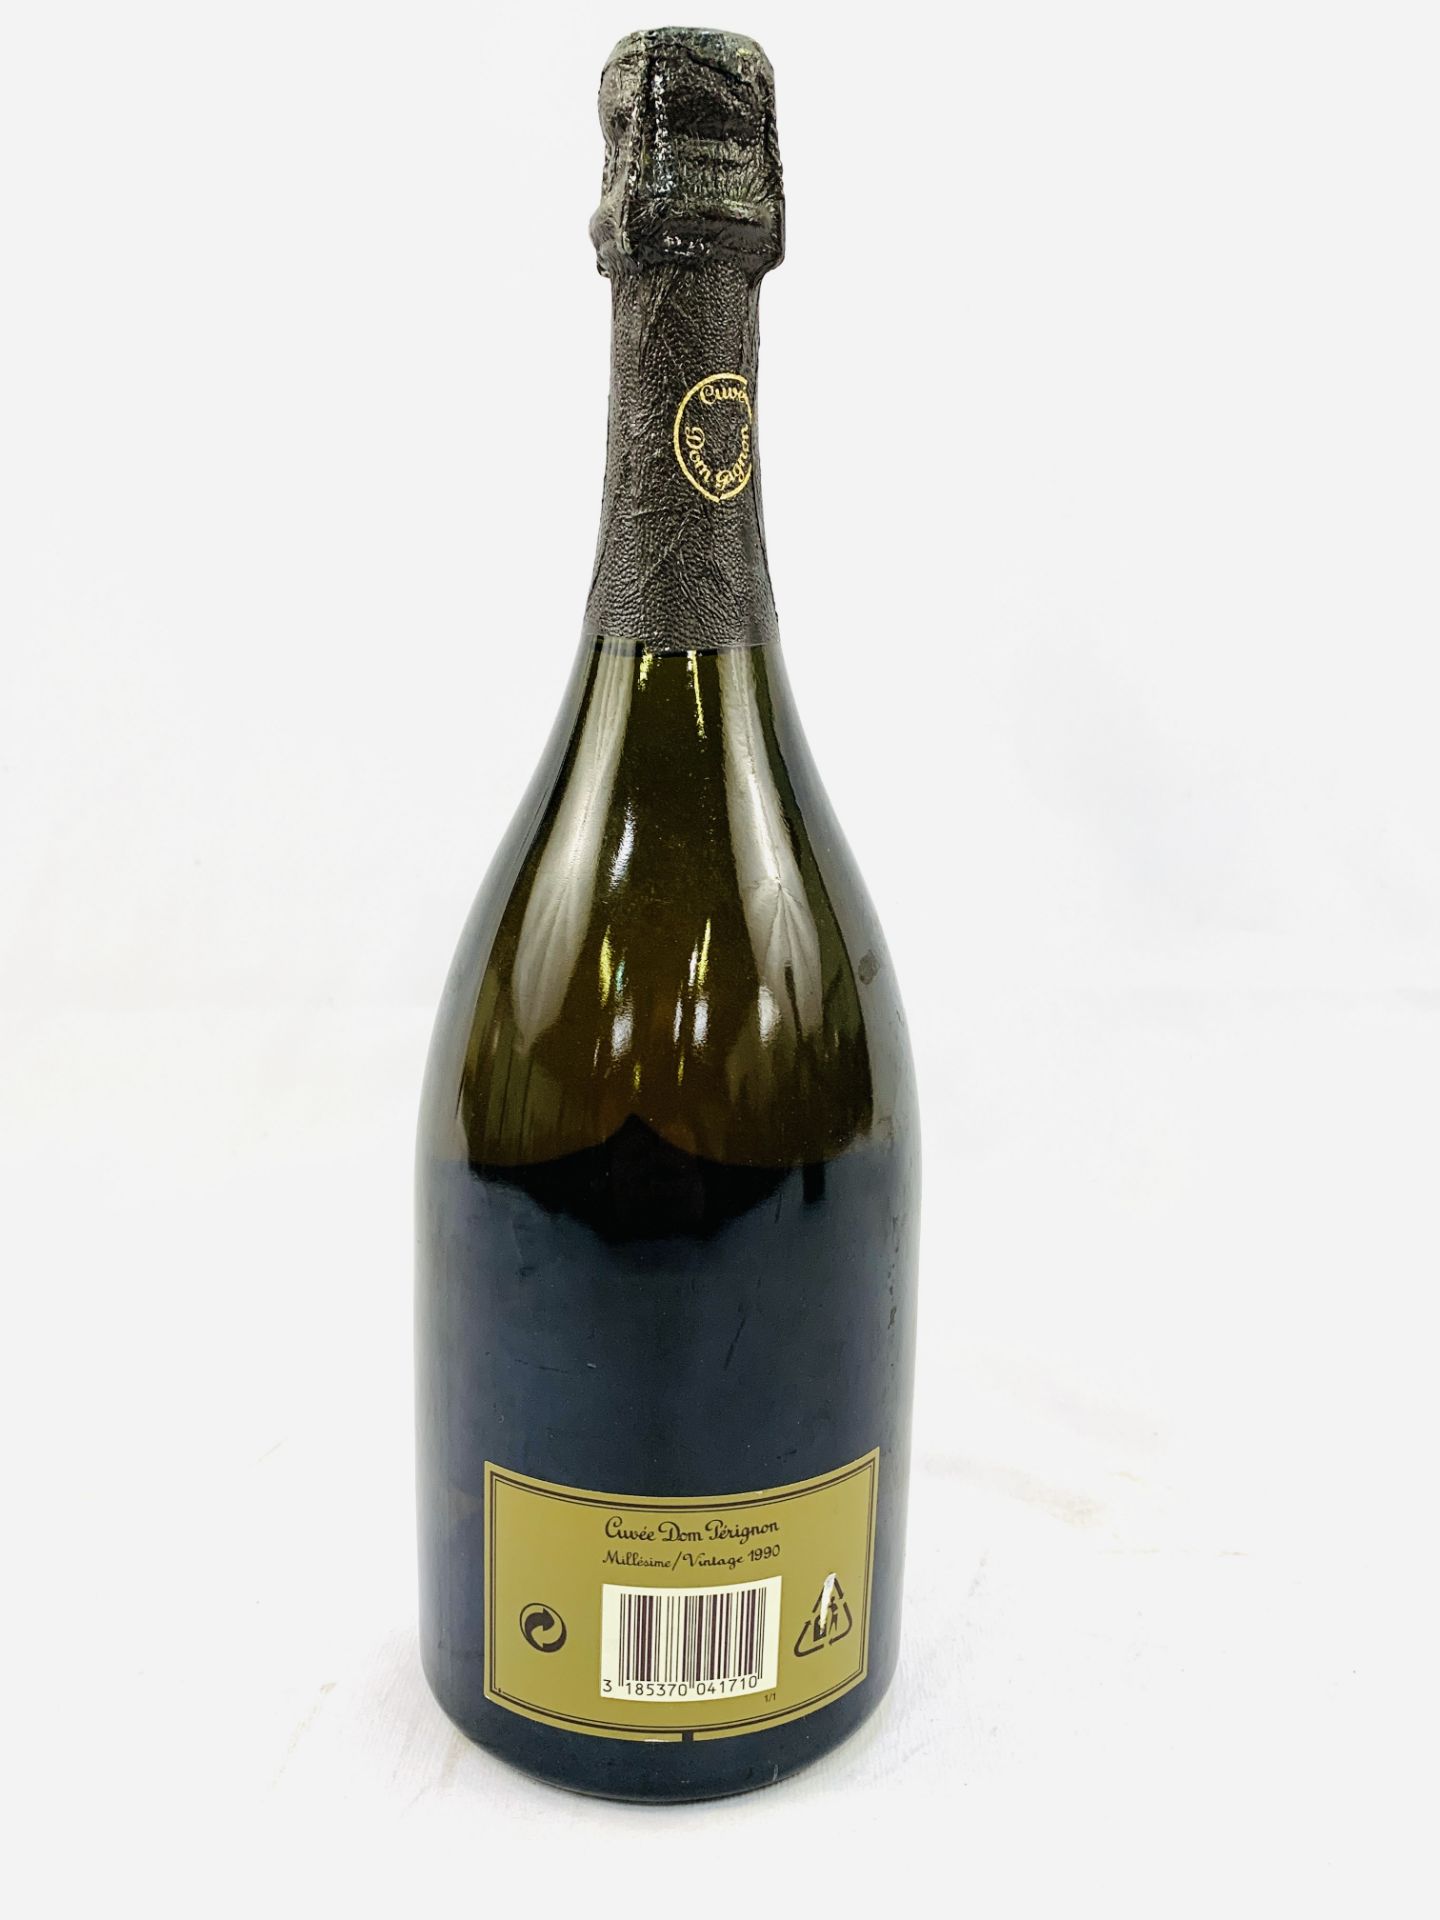 75cl bottle of 1990 Cuvee Dom Perignon vintage champagne - Bild 2 aus 2